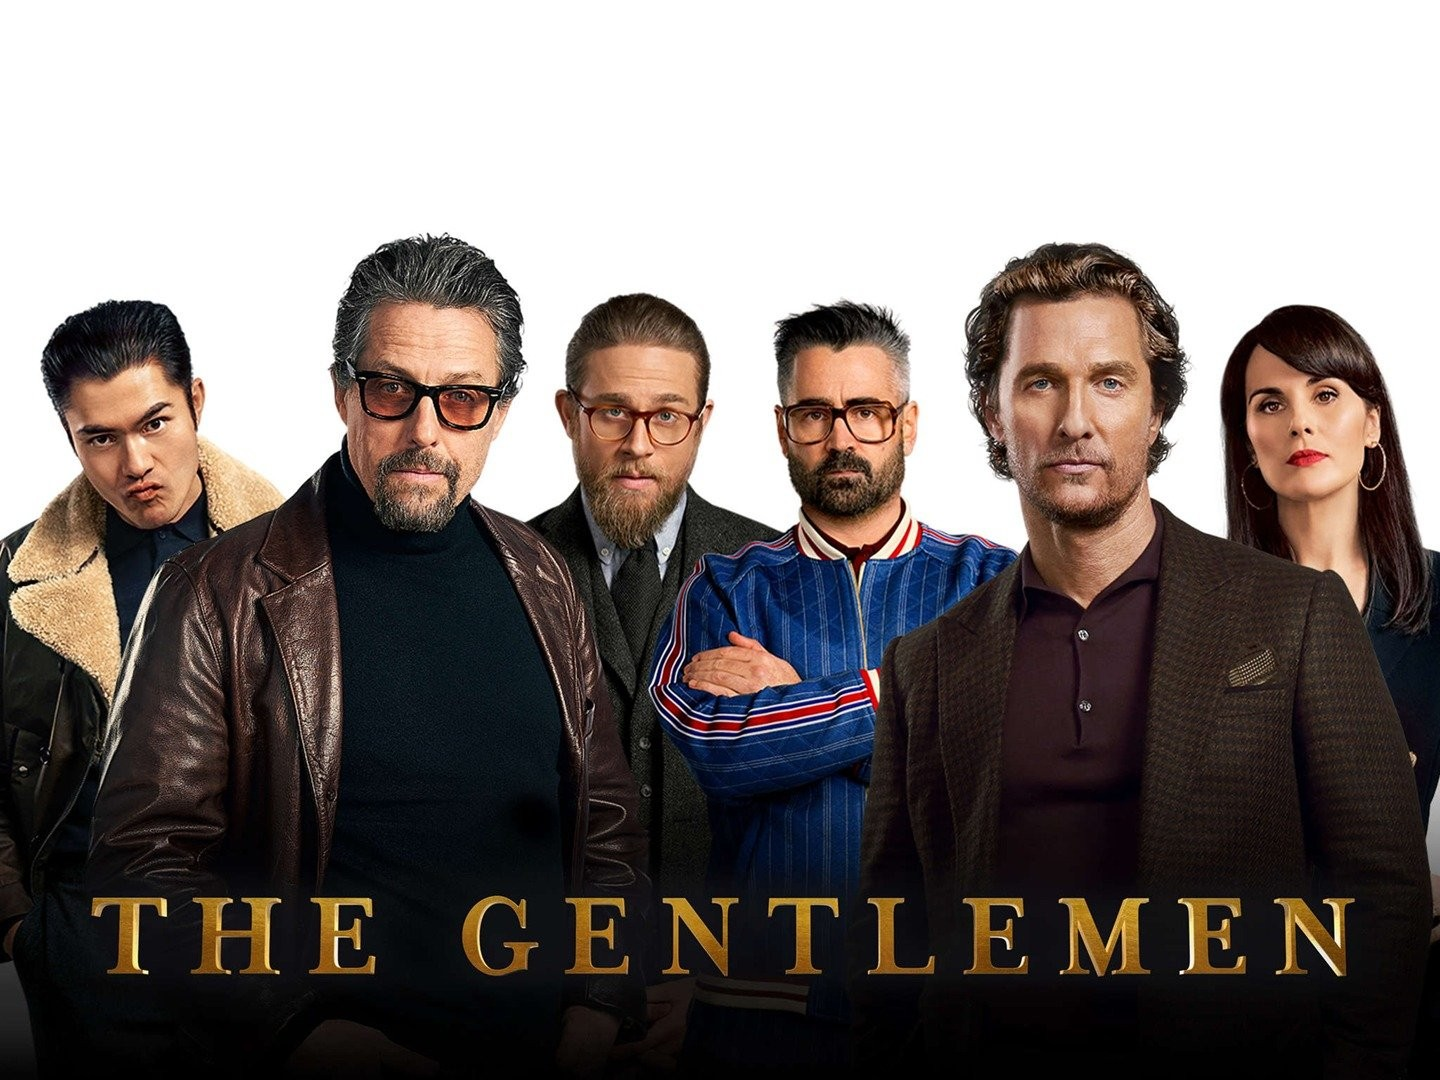 The Gentlemen season 1